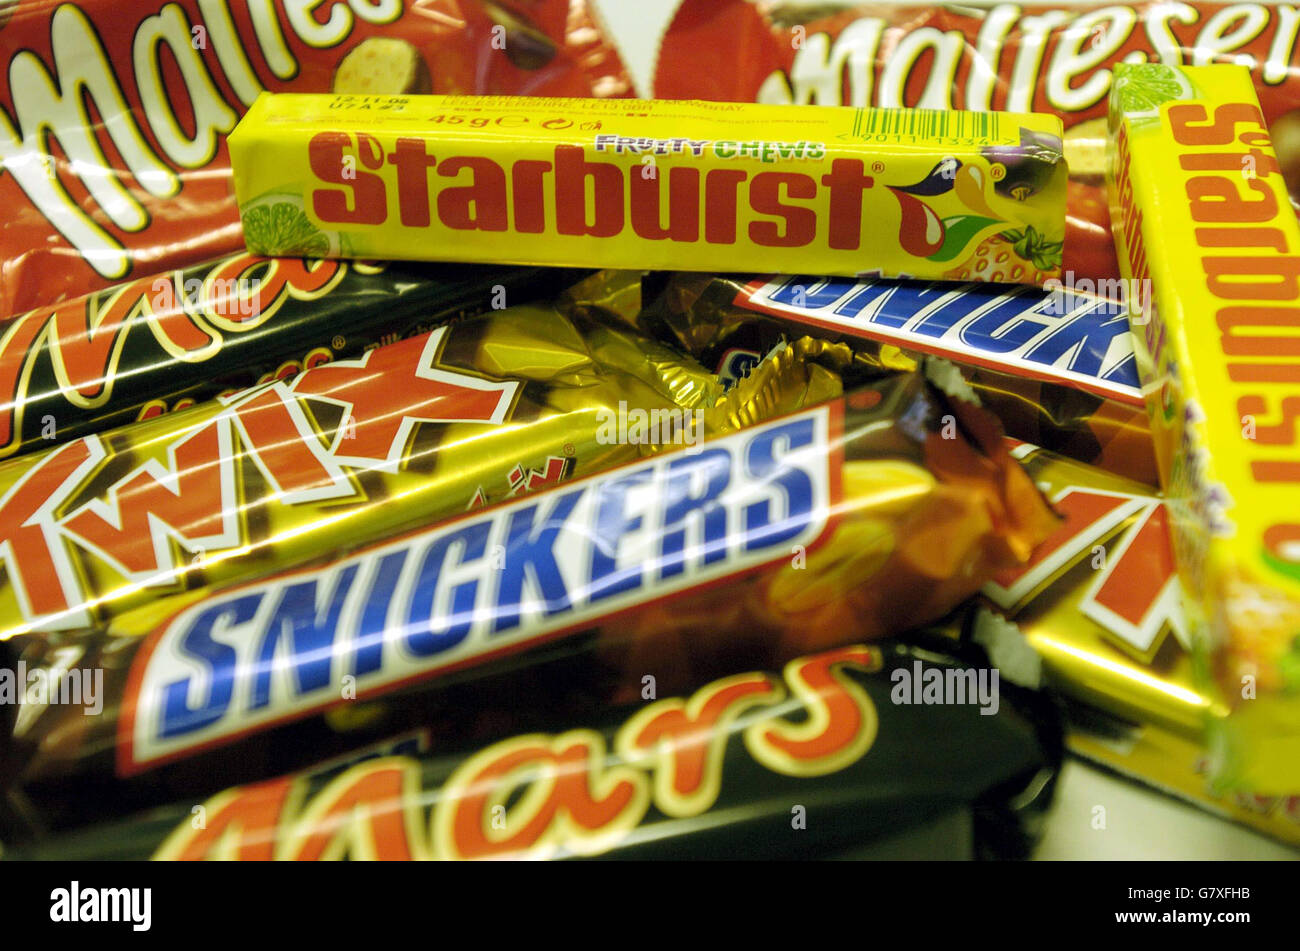 Una selección de dulces, después de que se anunció la empresa que hace Mars, Maltesers y Snicker bares es para hacker 700 puestos de trabajo y cambiar la producción de algunos dulces en el extranjero bajo planes para reestructurar su negocio. Foto de stock